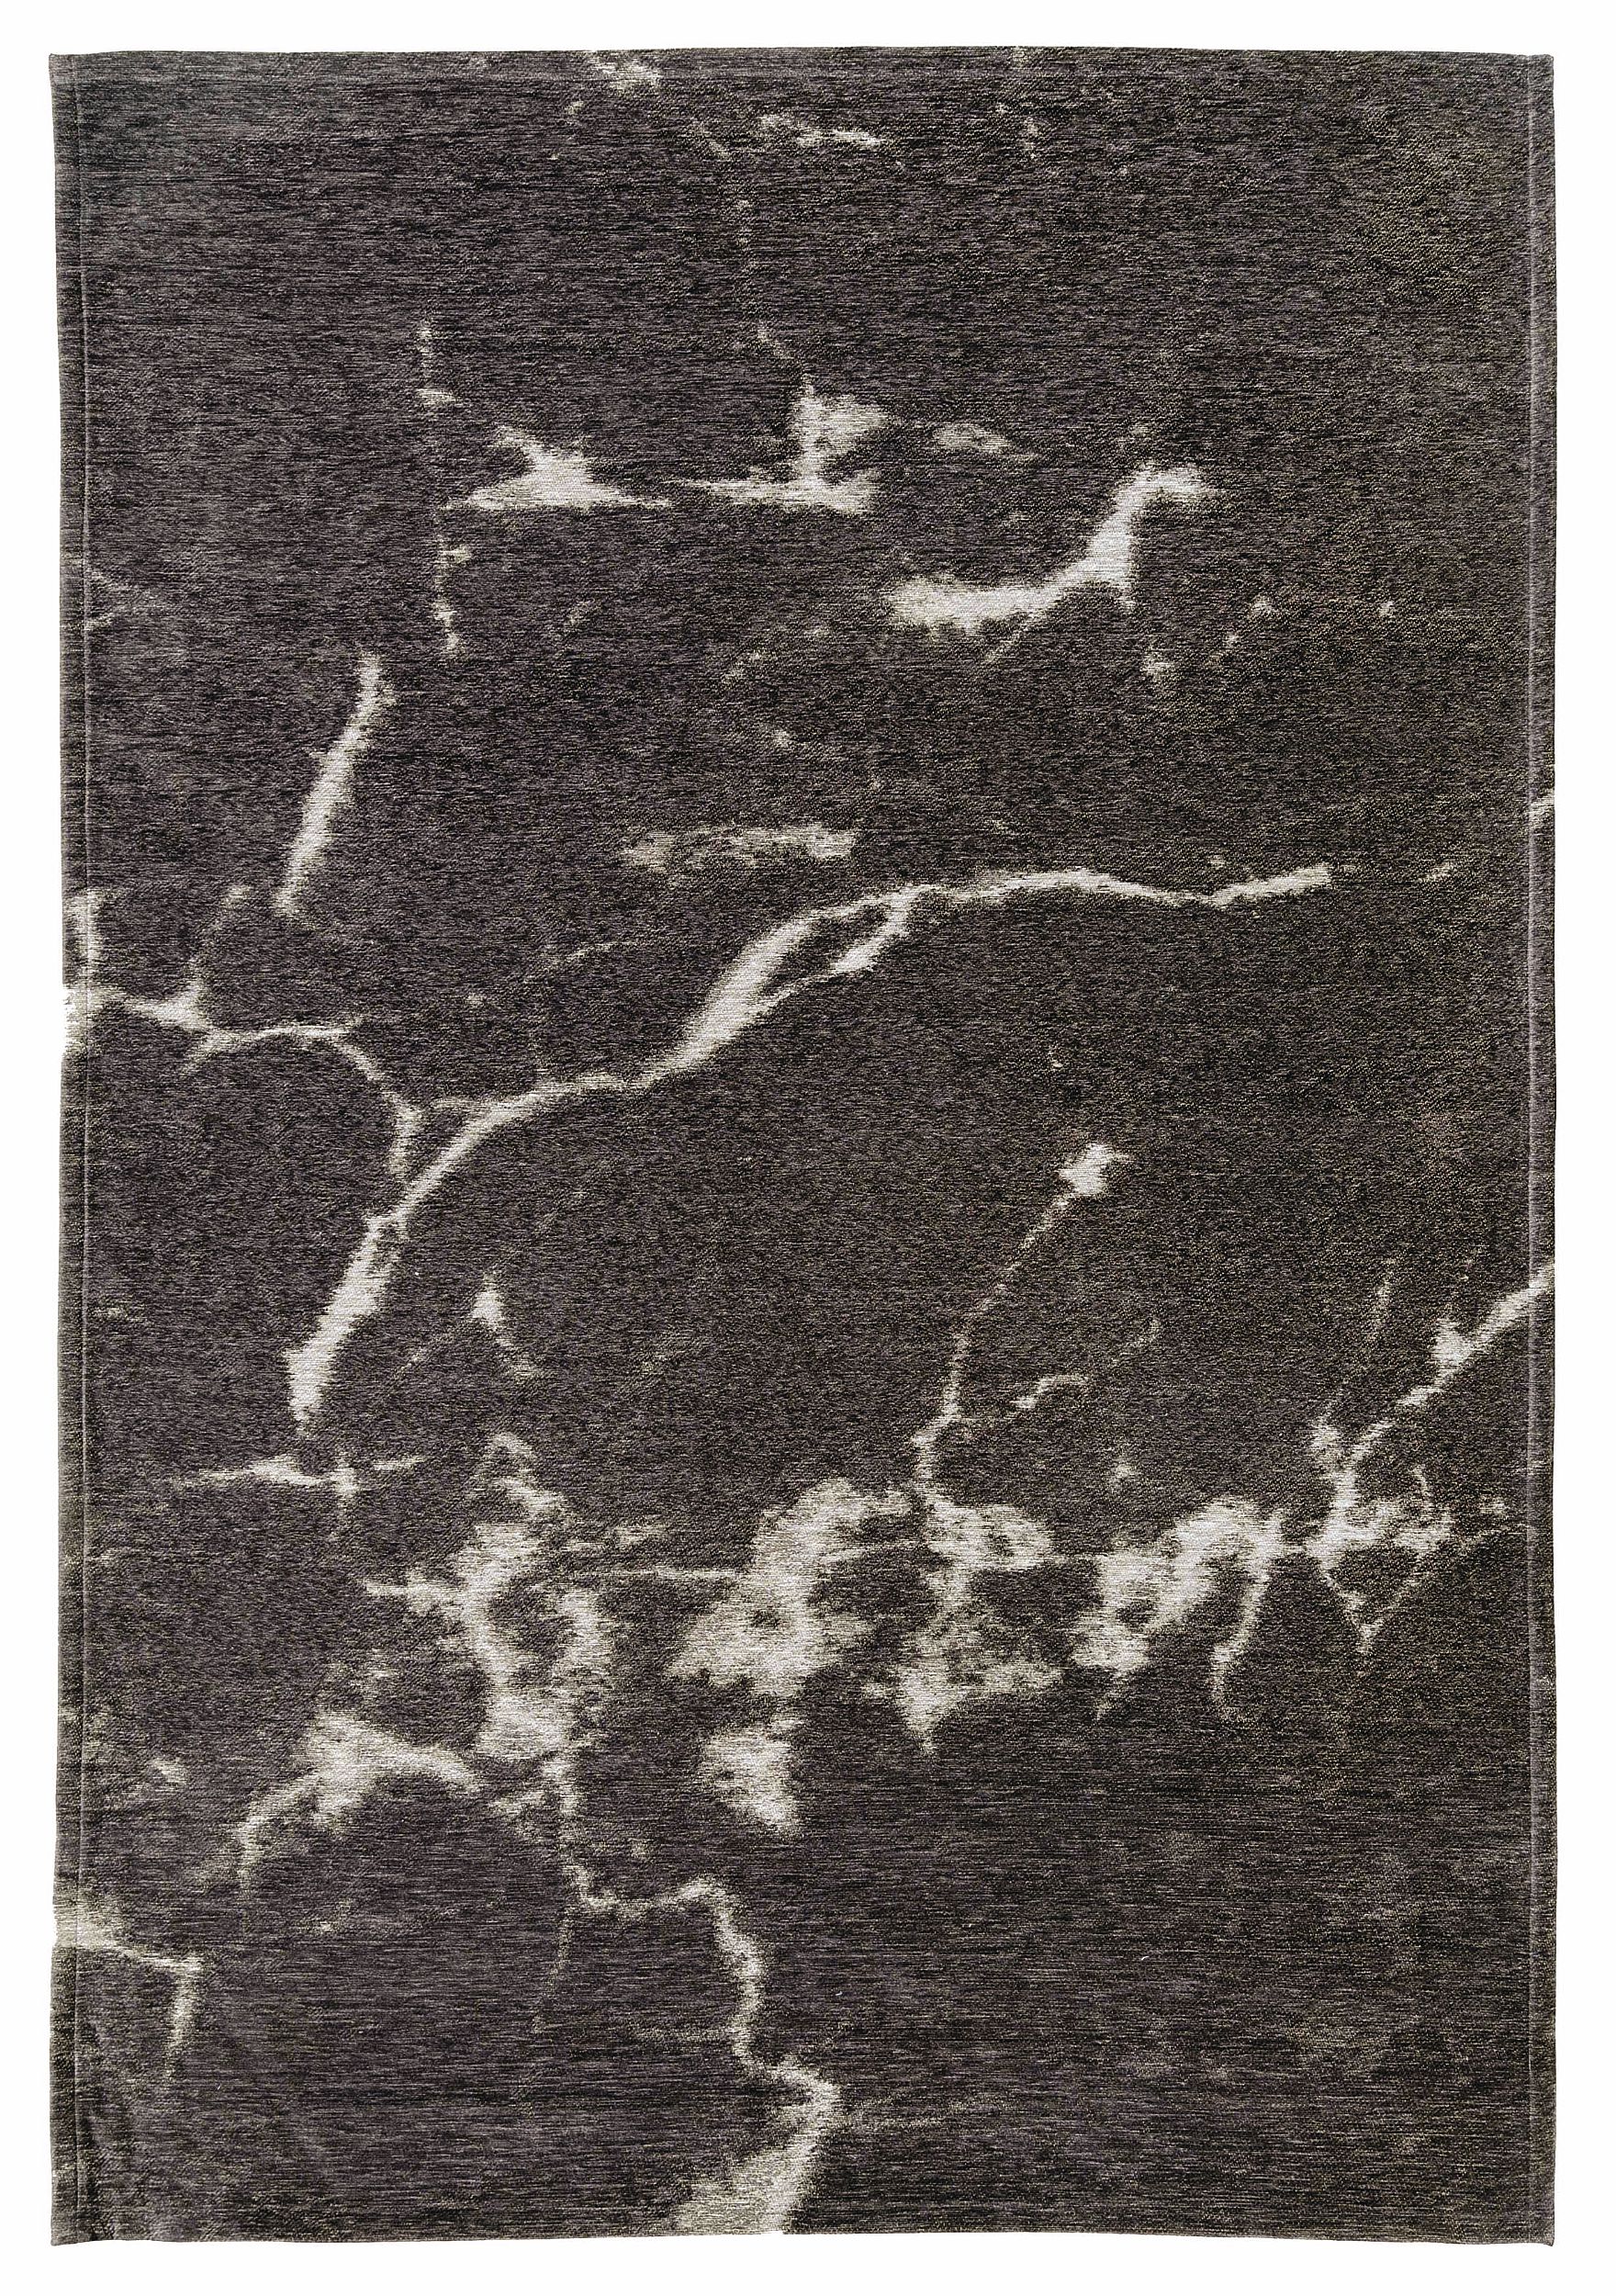 Dywan łatwoczyszczący Carrara Taupe by Maciej Zień